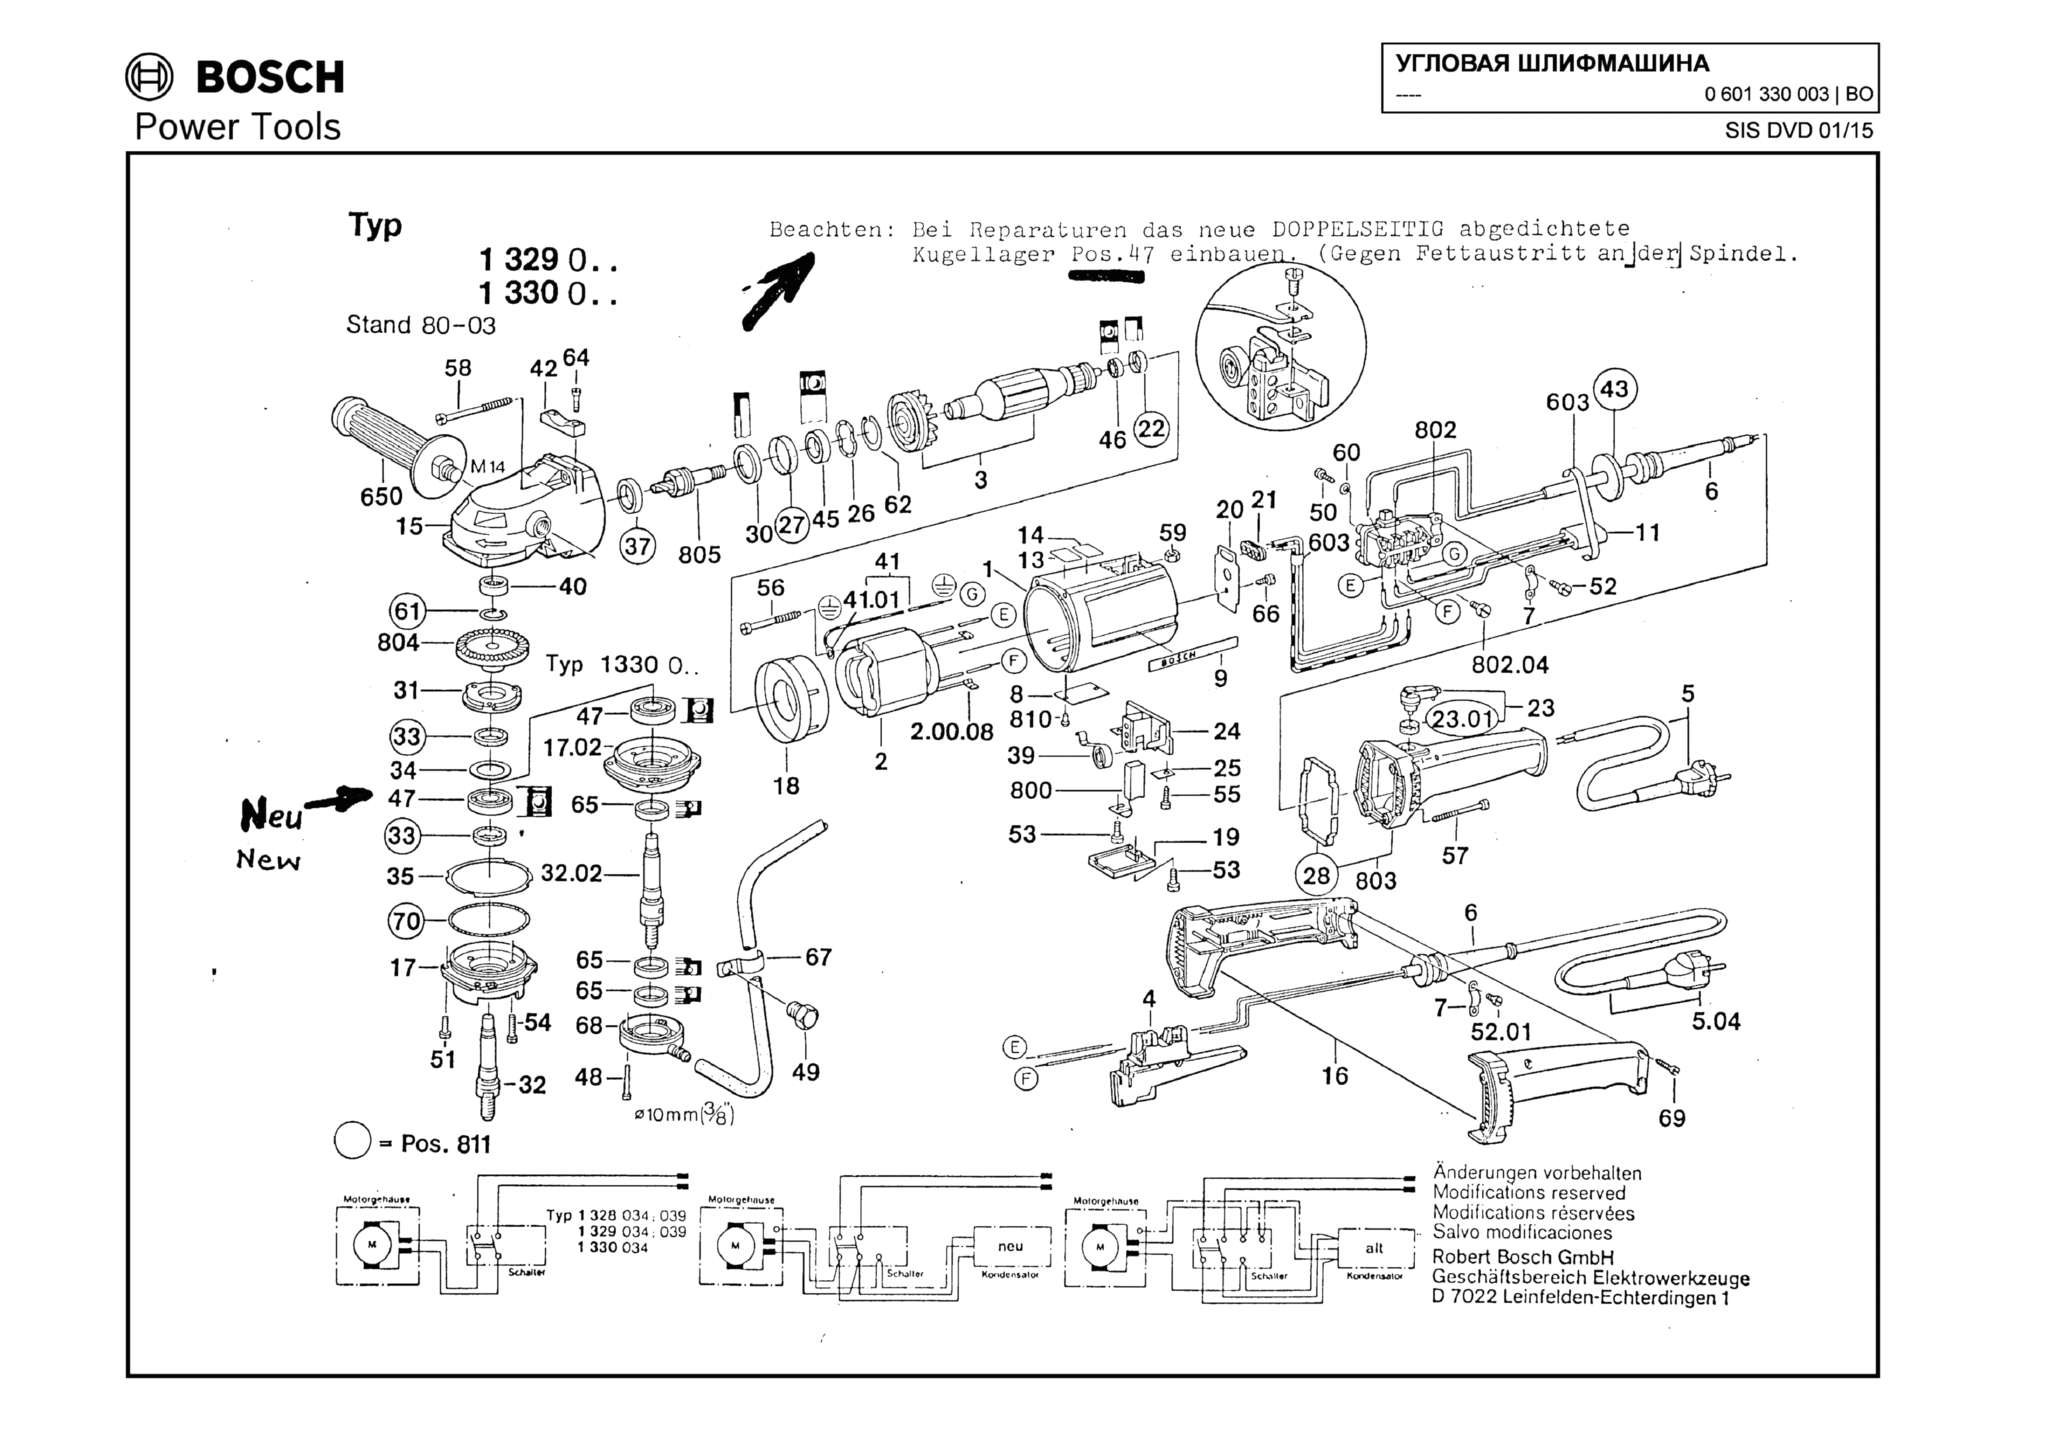 Запчасти, схема и деталировка Bosch (ТИП 0601330003)